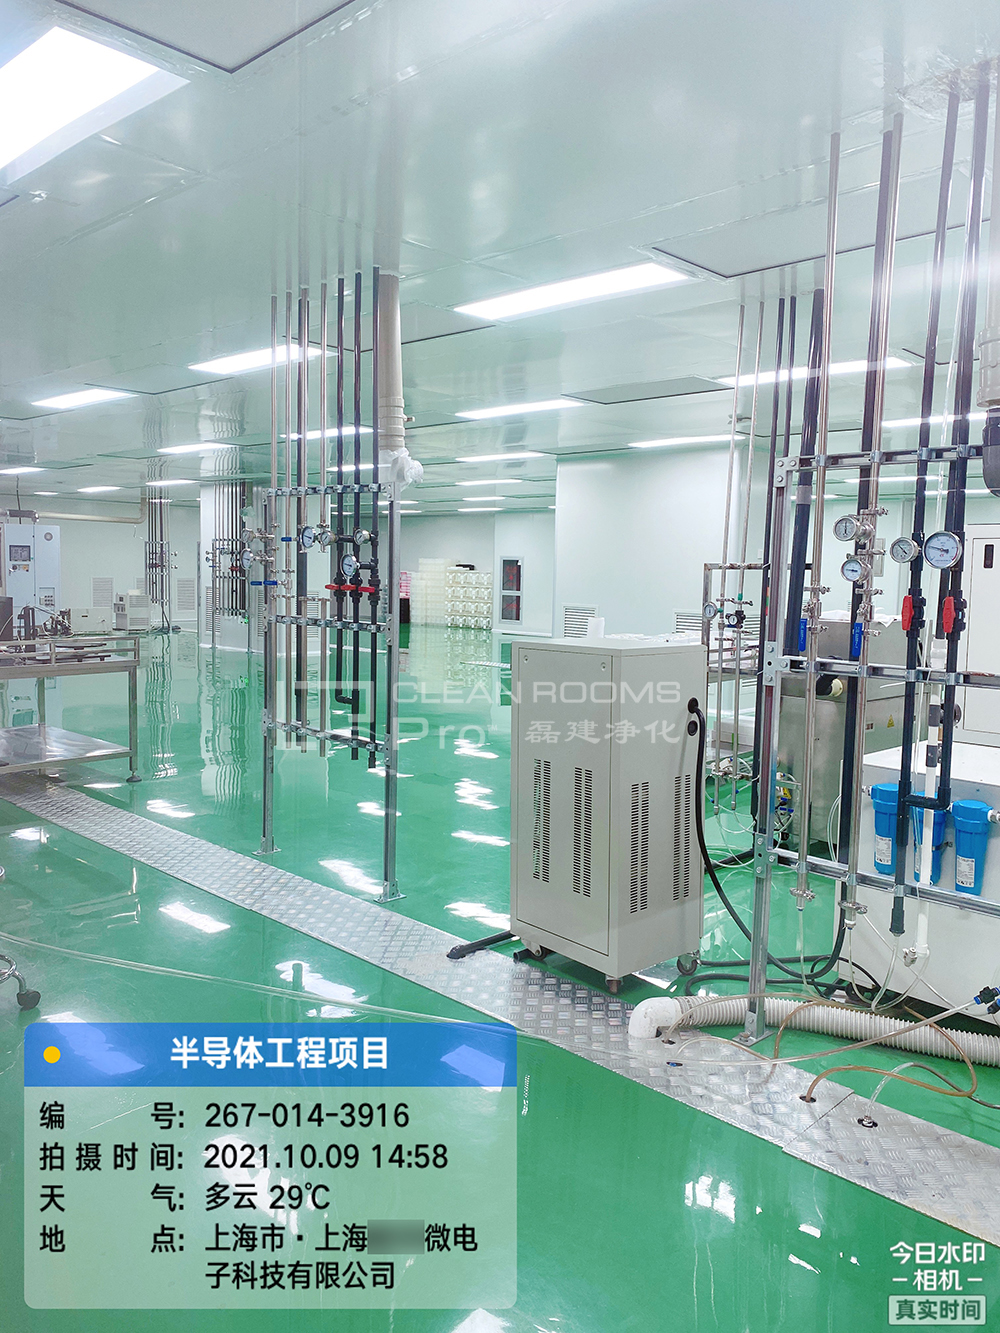 上海微电子半导体制造和封装百级洁净室装修工程竣工了_磊建净化工程公司